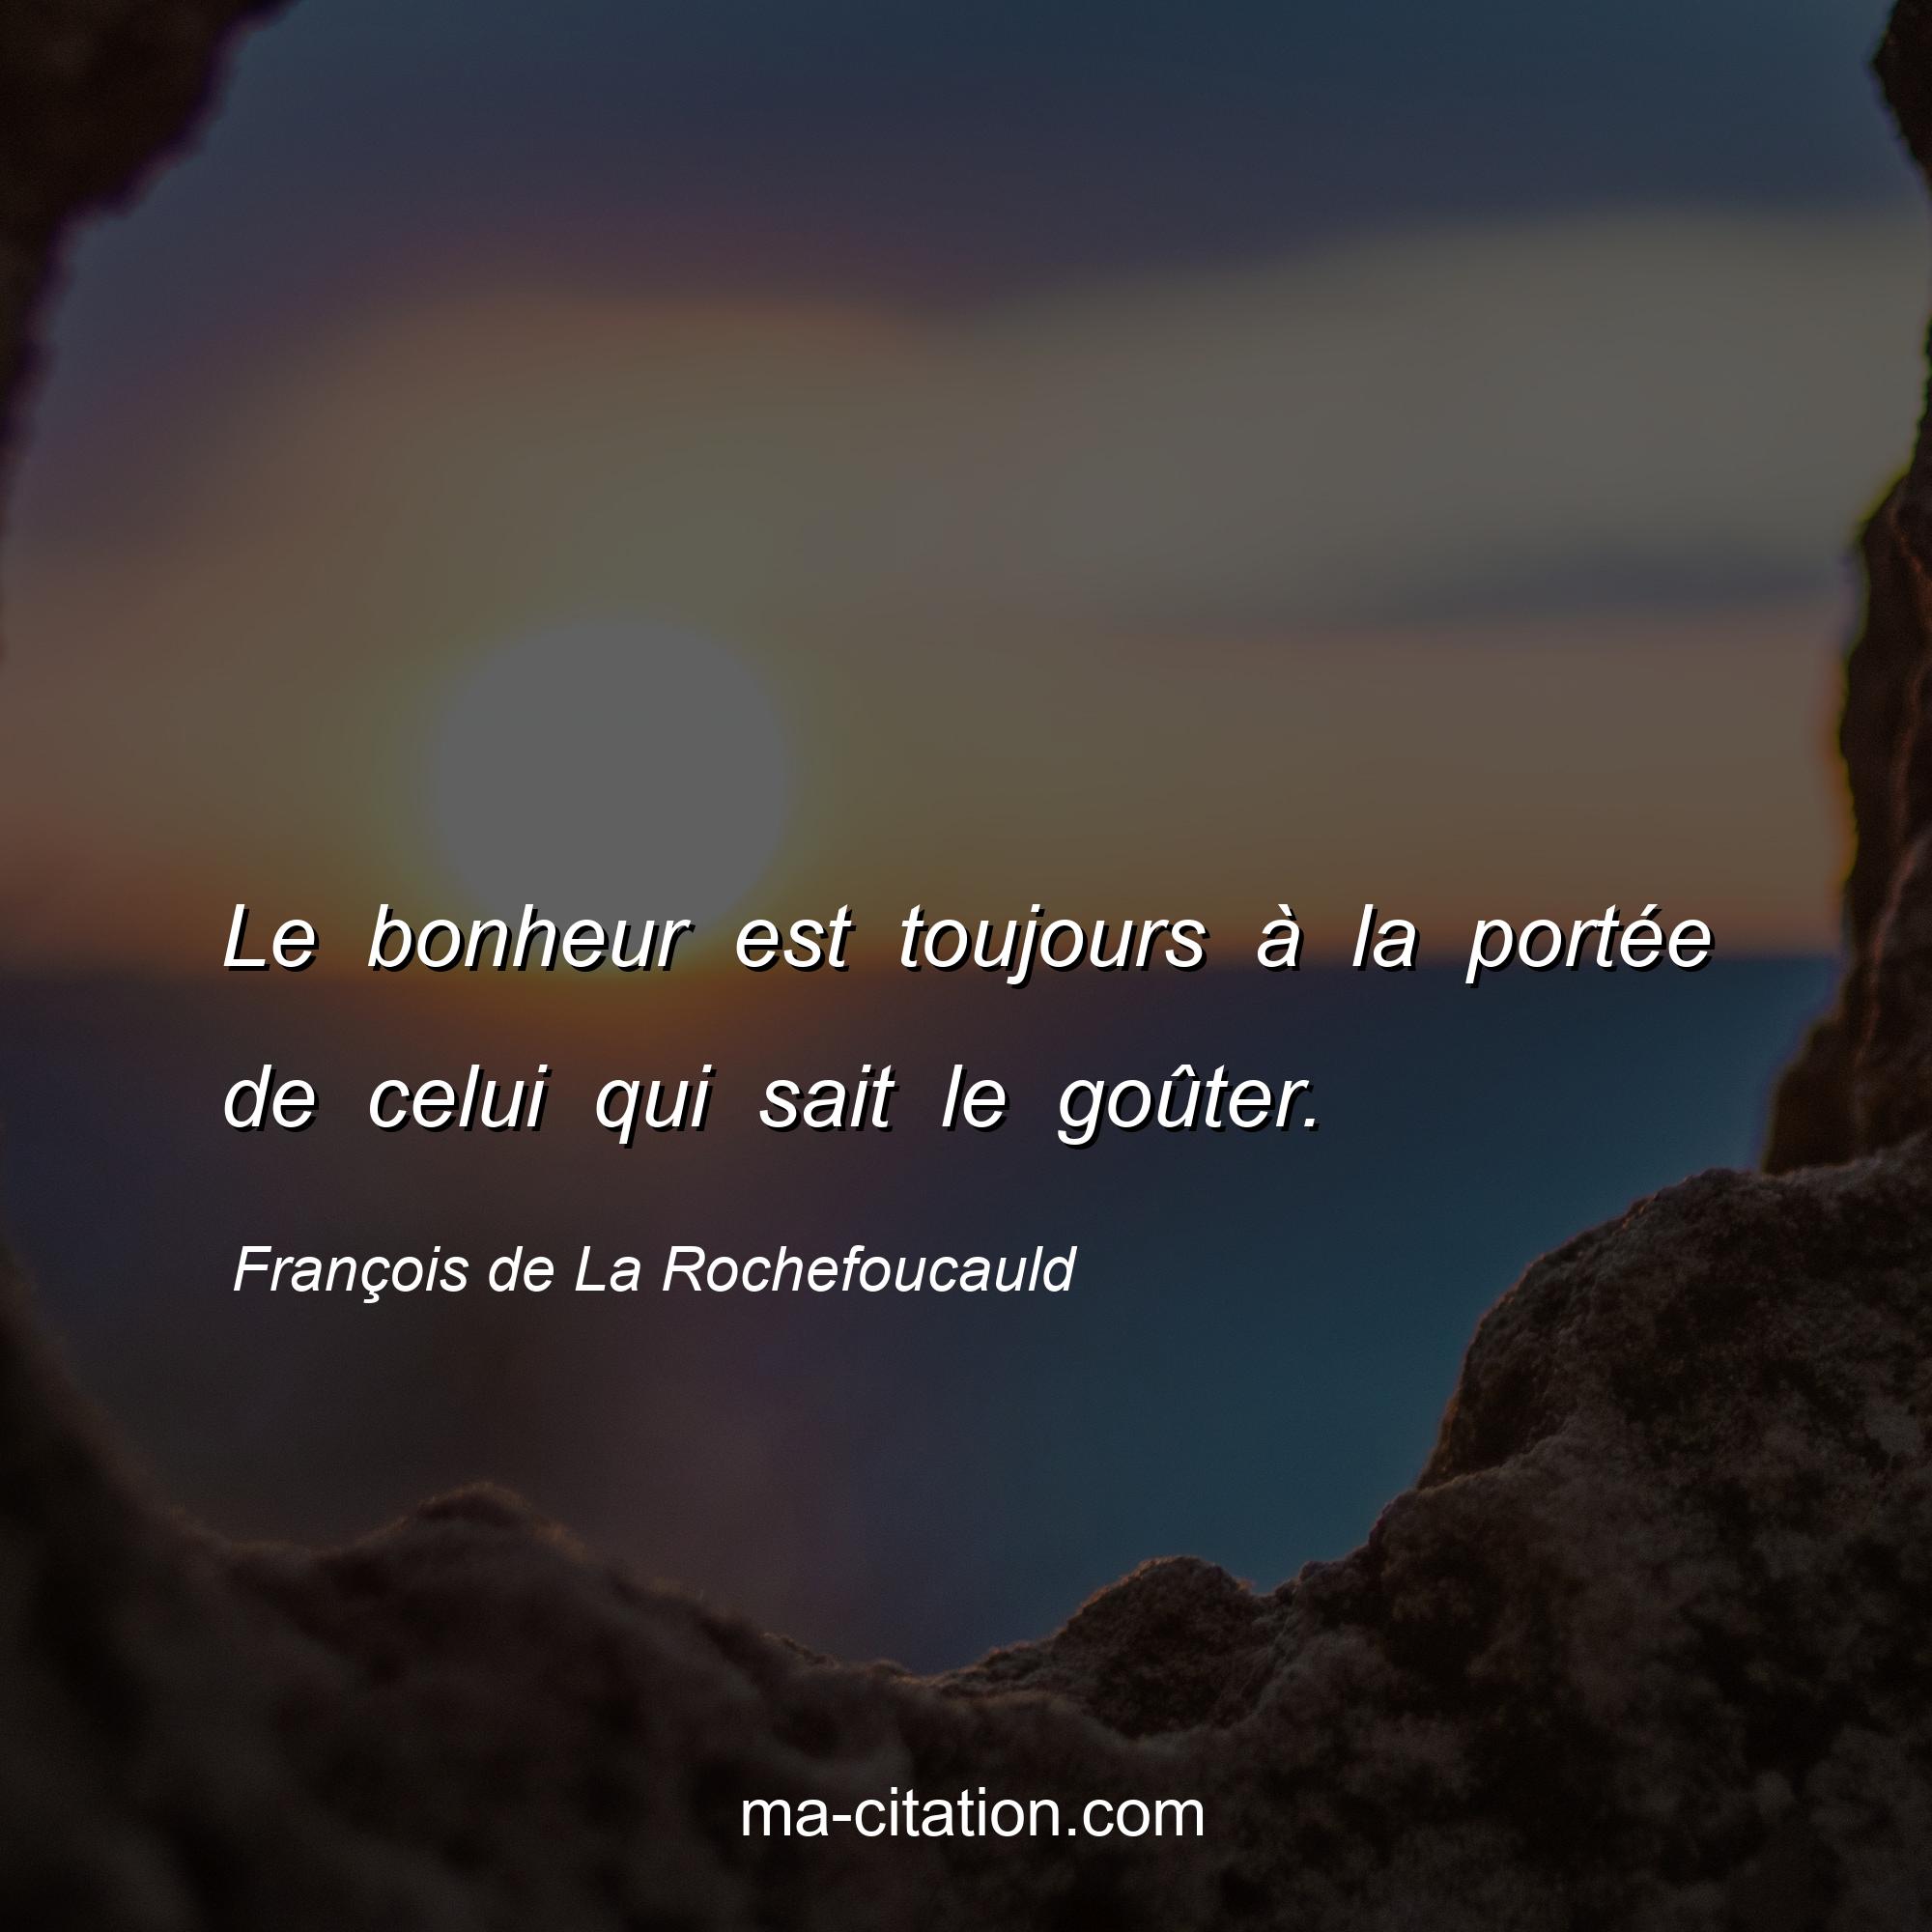 François de La Rochefoucauld : Le bonheur est toujours à la portée de celui qui sait le goûter.